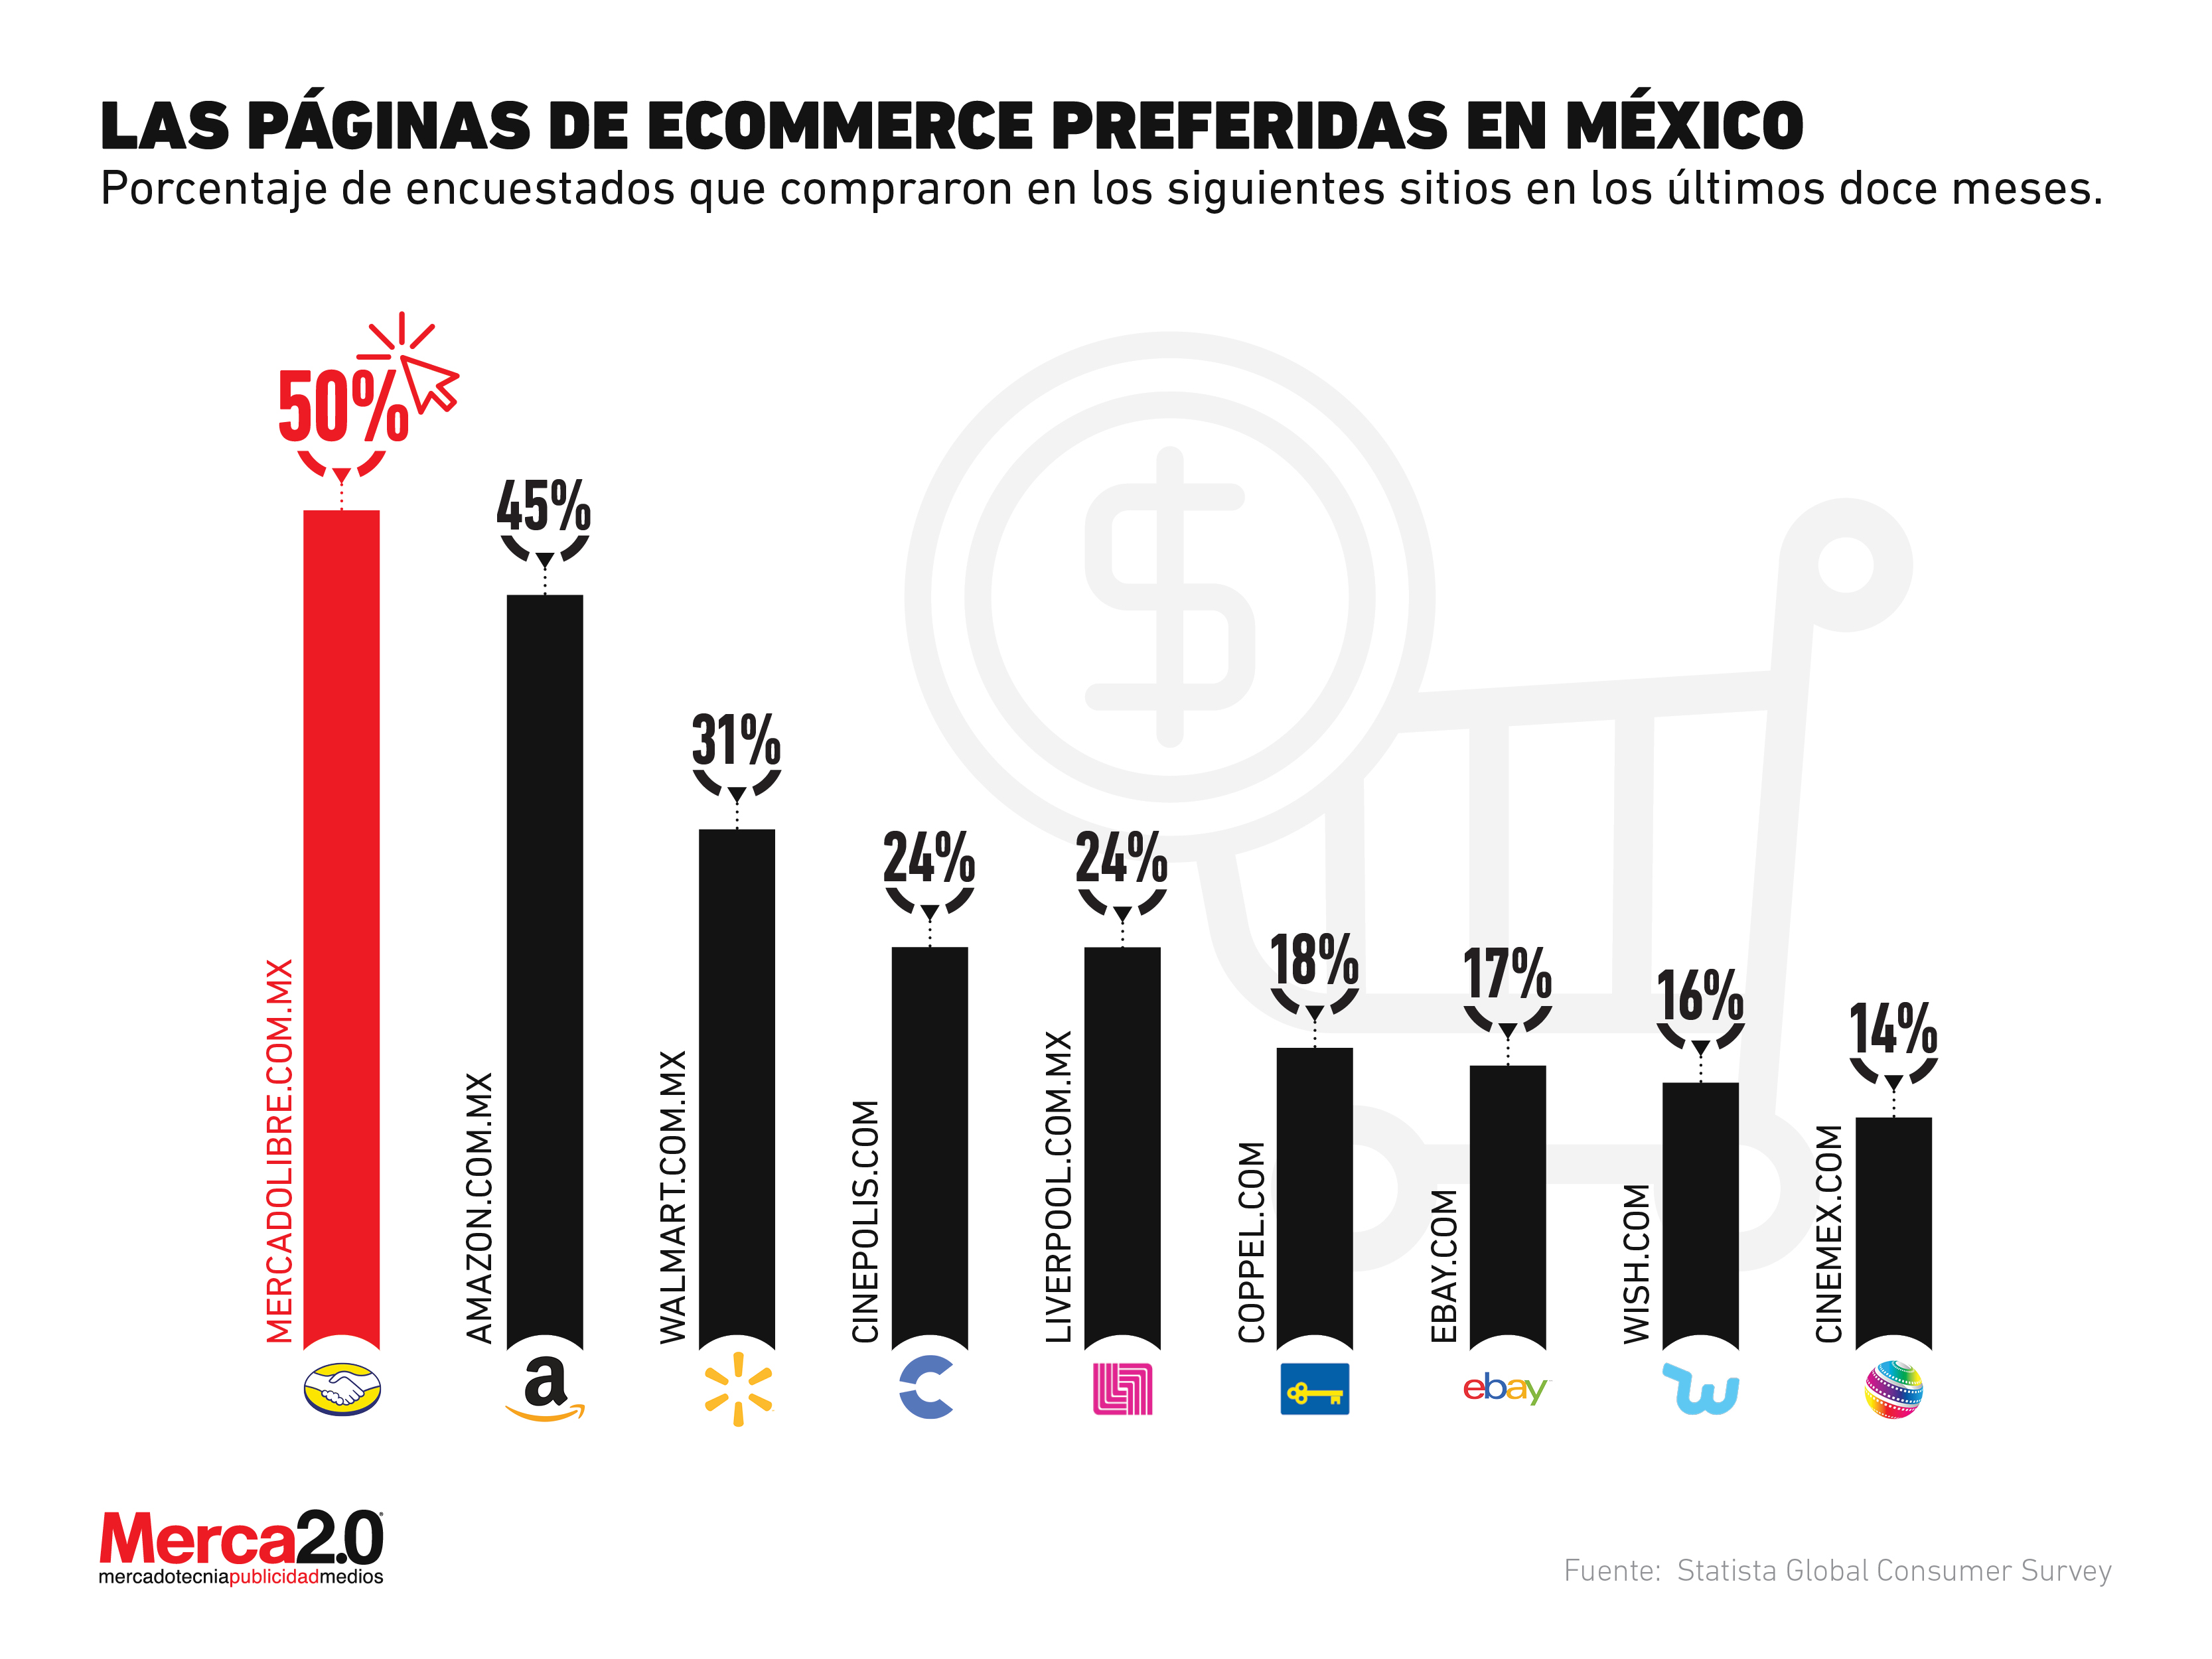 Amazon no es la opción preferida en México para realizar compras online